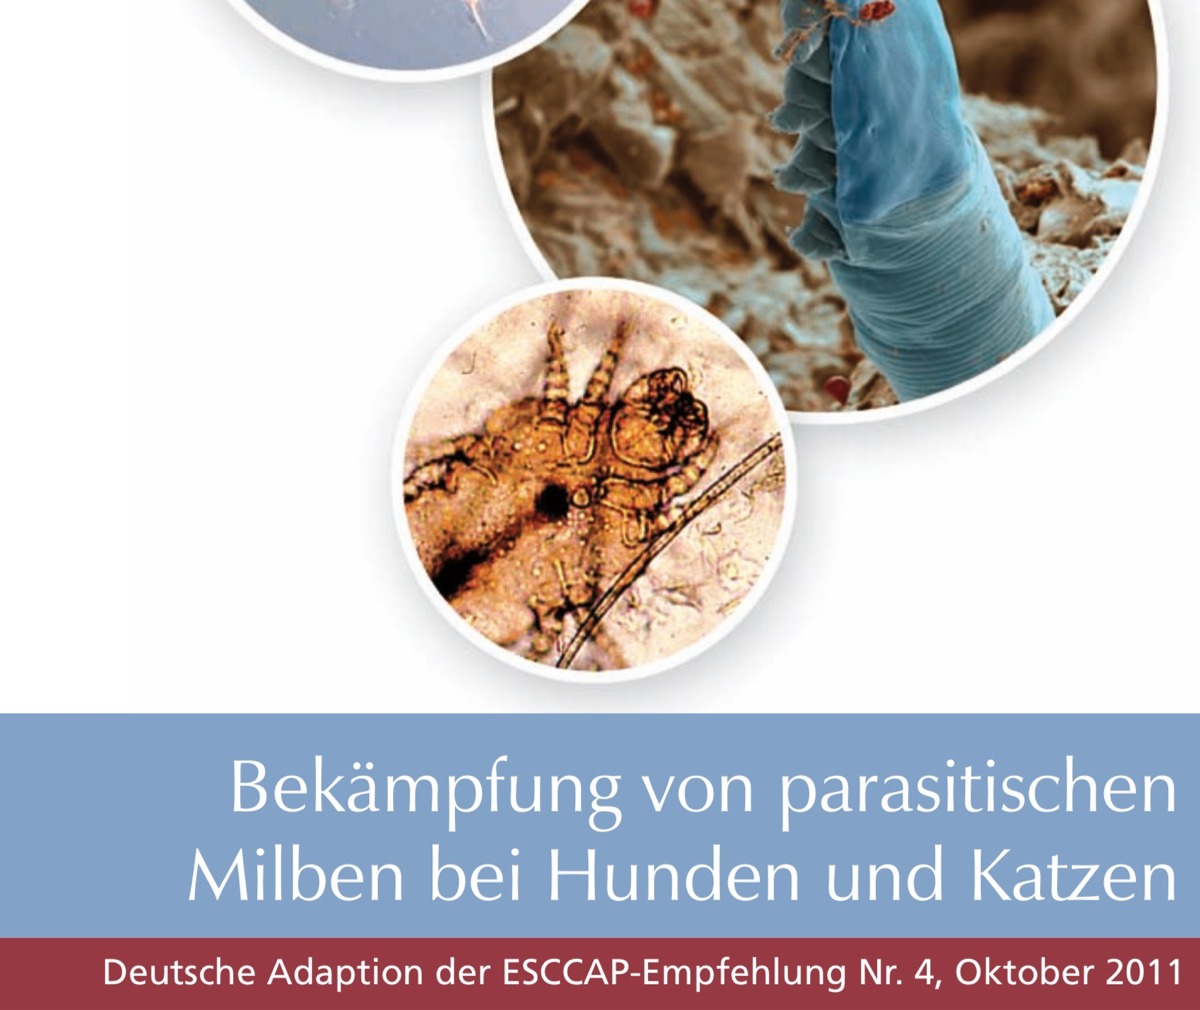 Abbildung der Empfehlung zur Bekämpfung von parasitischen Milben bei Hunden und Katzen